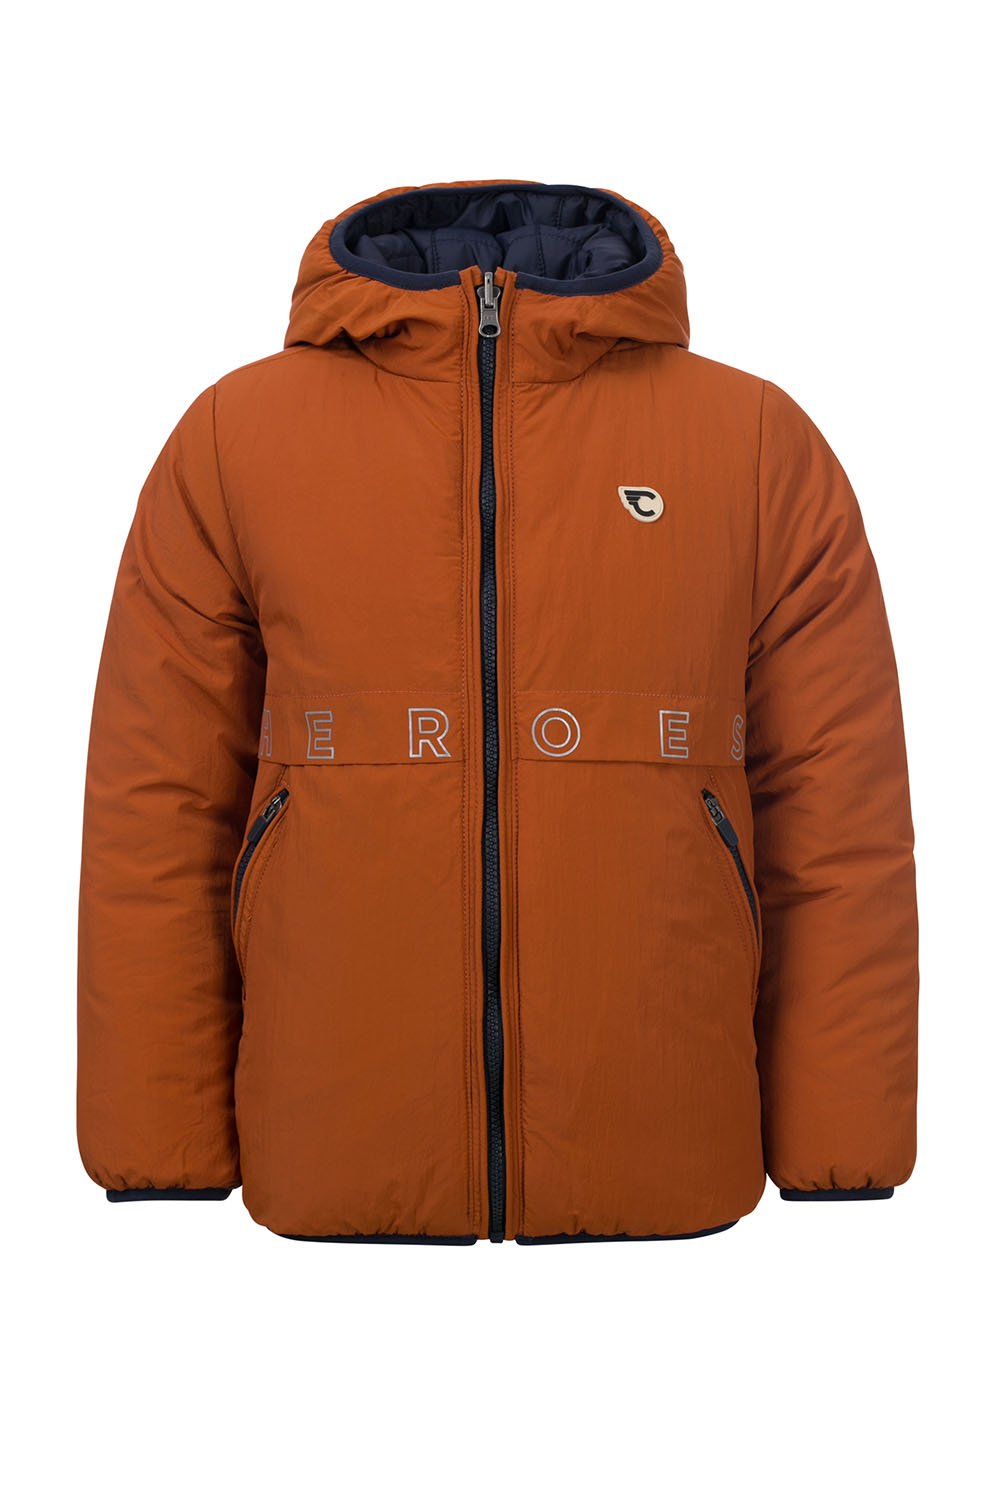 Jongens REVERSIBLE outerwear jacket van Common Heroes in de kleur Burnt Orange in maat 146/152.